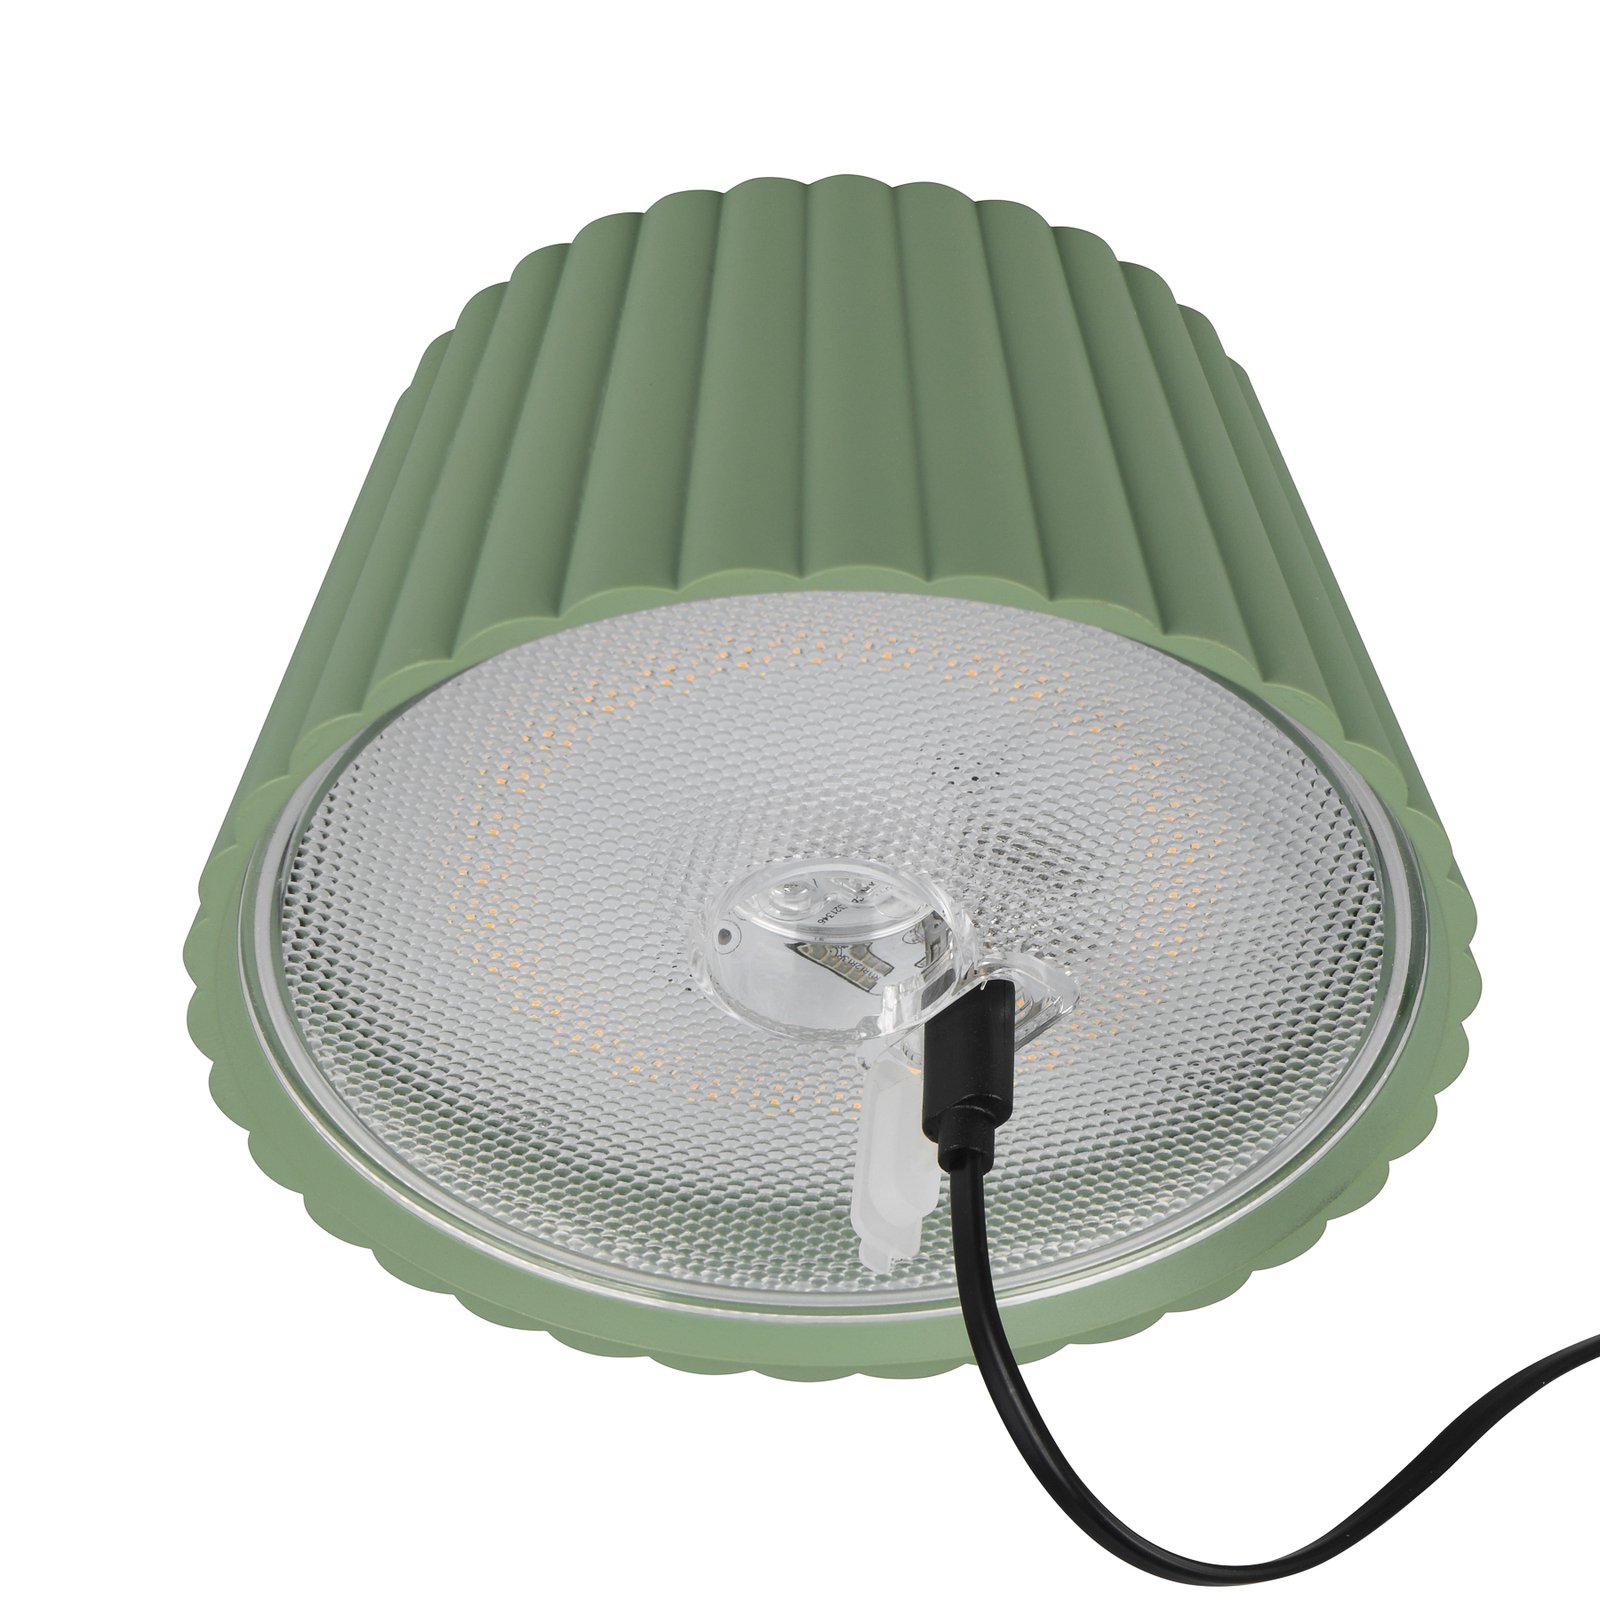 Stolní lampa Suarez LED s dobíjením, zelená, výška 39 cm, kovová